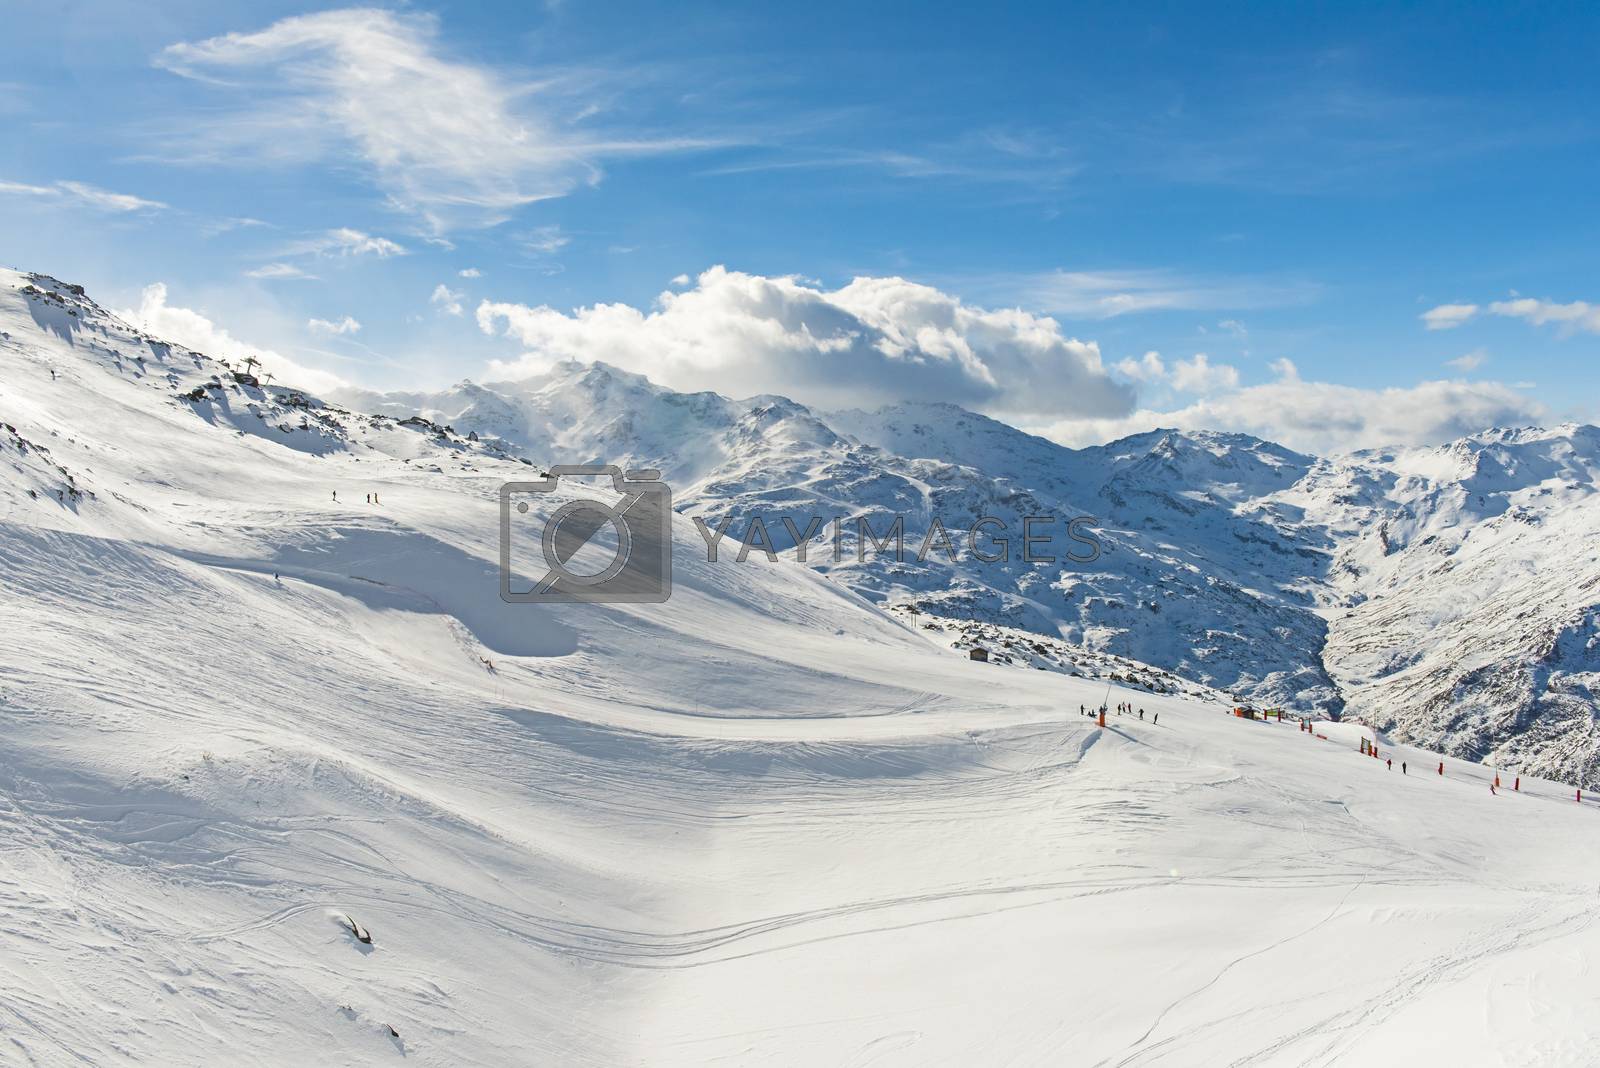 Royalty free image of Skiers on a piste in alpine ski resort by paulvinten